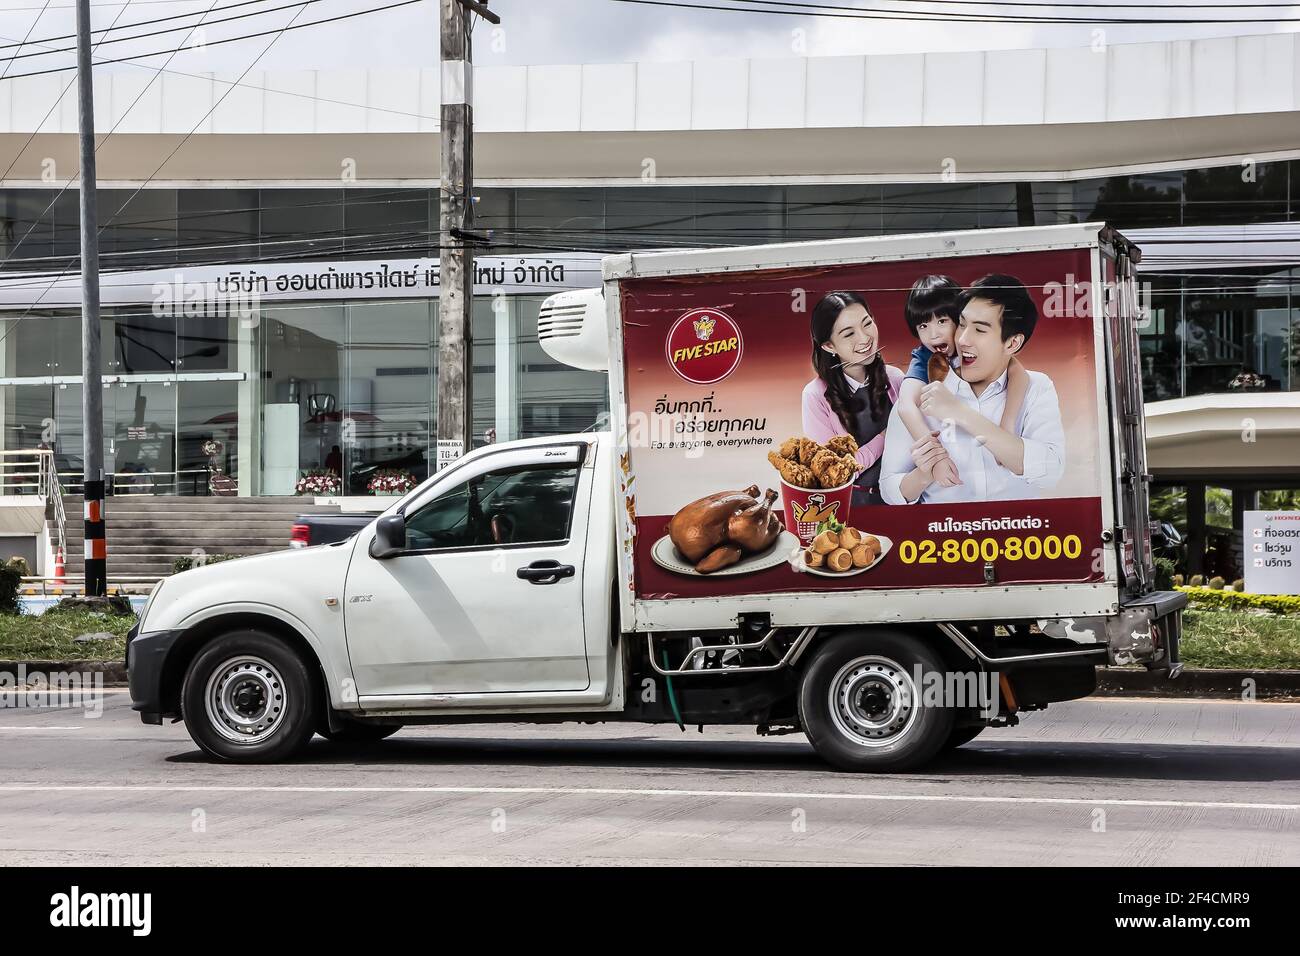 Chiangmai, Thaïlande - 2 mars 2021 : camion conteneur de la compagnie ALIMENTAIRE FIVE STAR. Photo sur la route n°121 à environ 8 km du centre-ville de Chiangmai en thaïlande. Banque D'Images